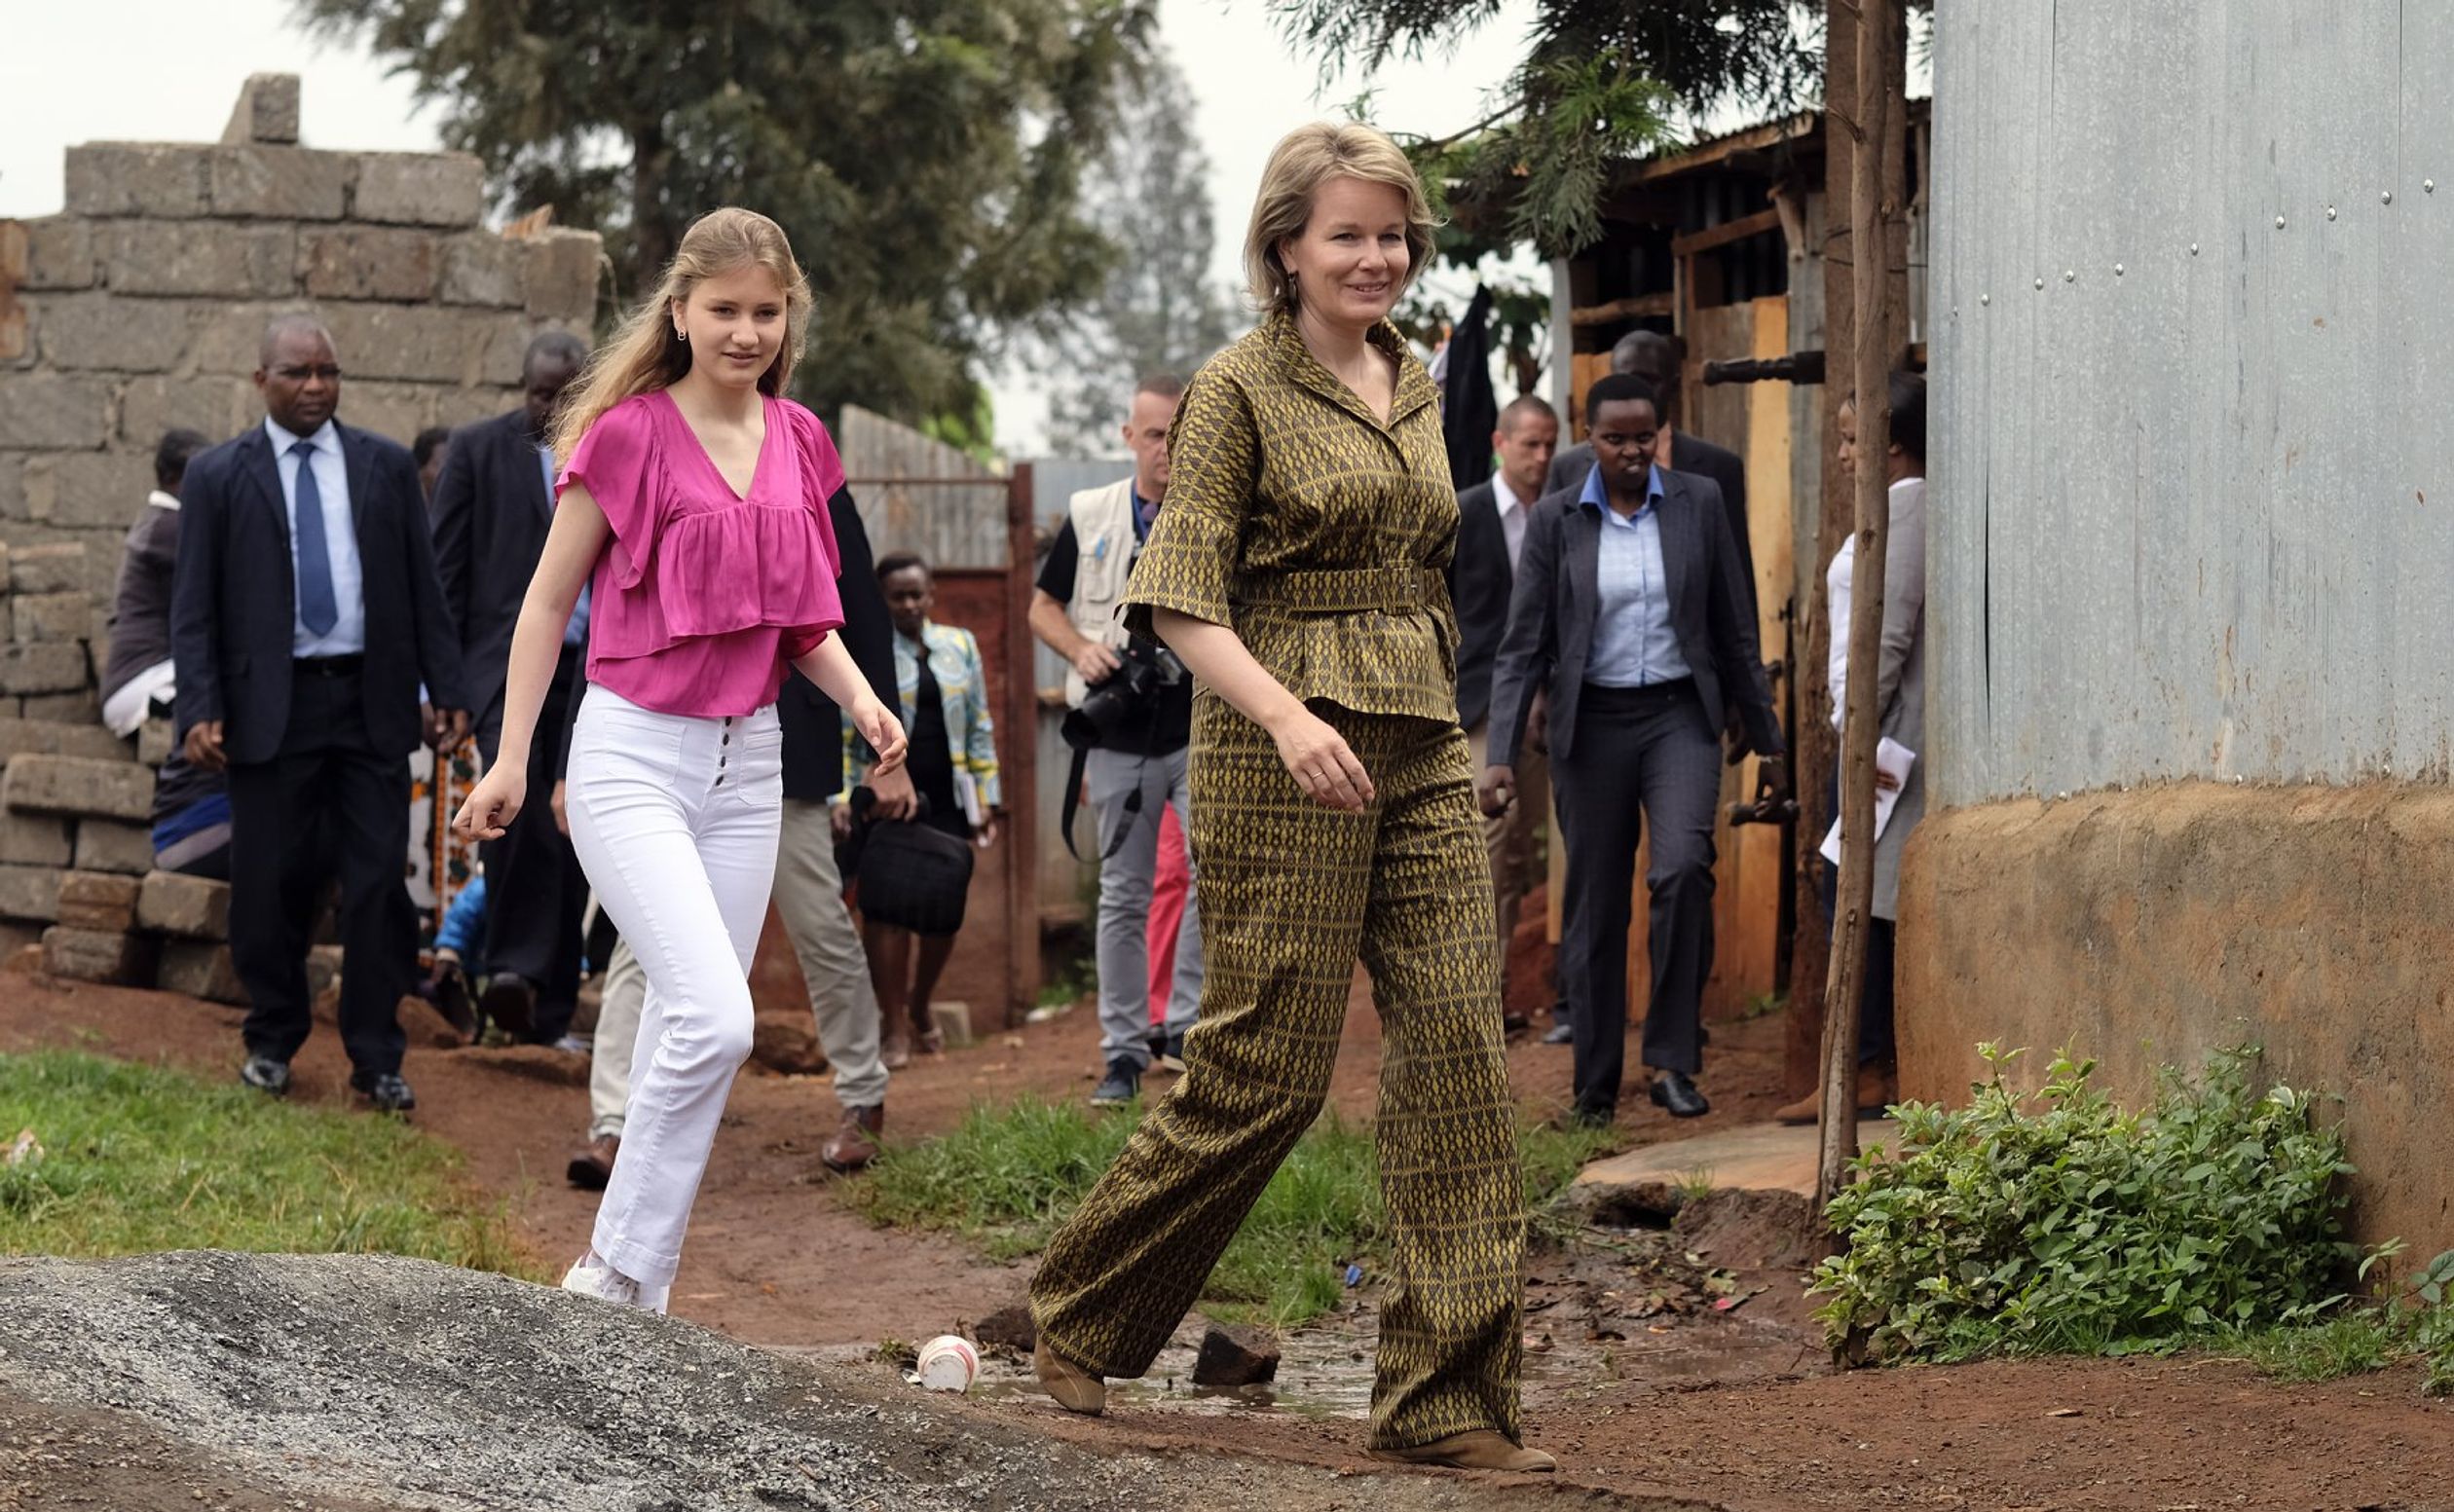 In juni 2019 bezocht prinses Elisabeth samen met haar moeder, koningin Mathilde, sloppenwijken in